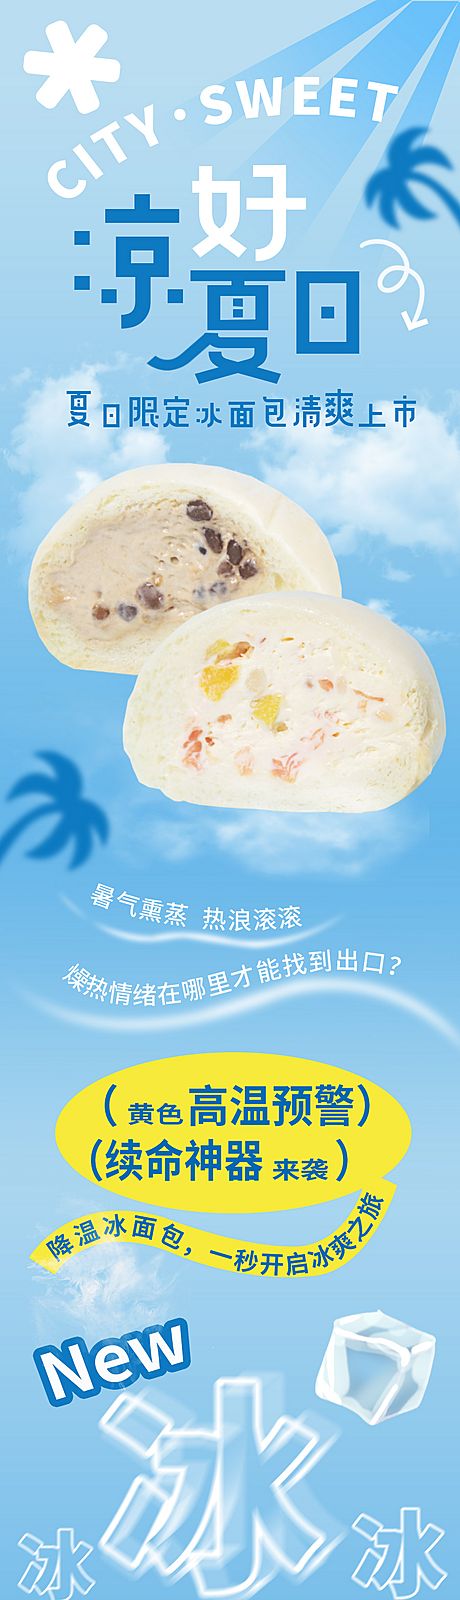 仙图网-夏季甜品冰面包上新公众号长图